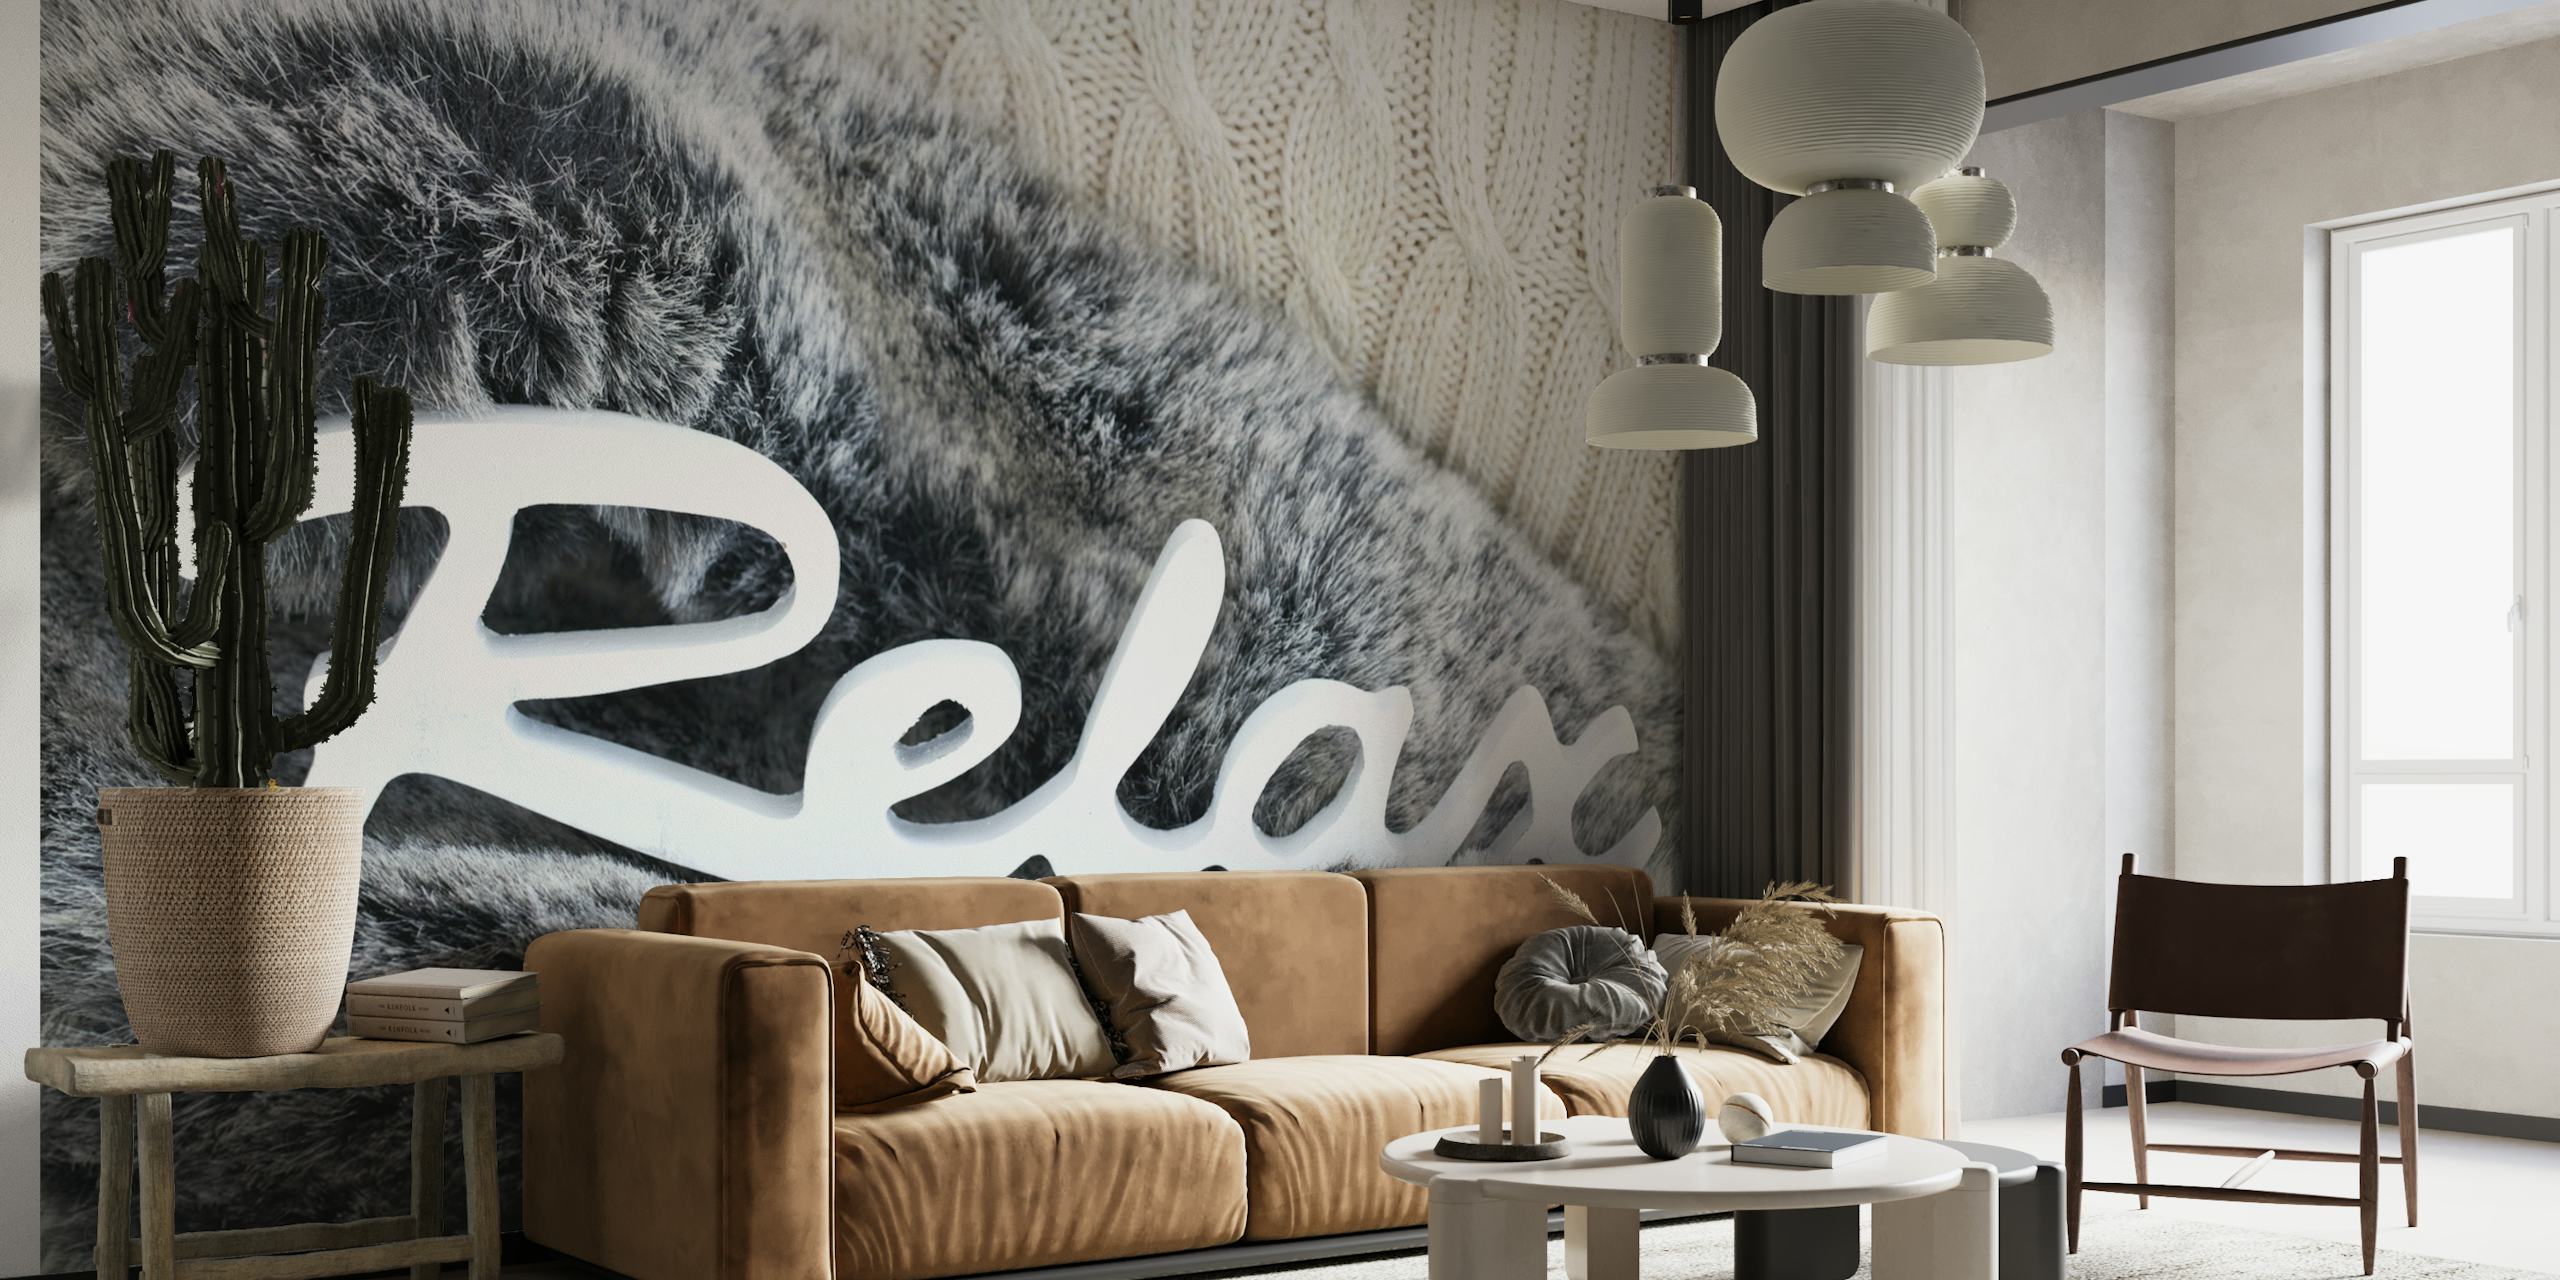 Carta da parati con texture in finta pelliccia e la parola "Relax" in caratteri eleganti